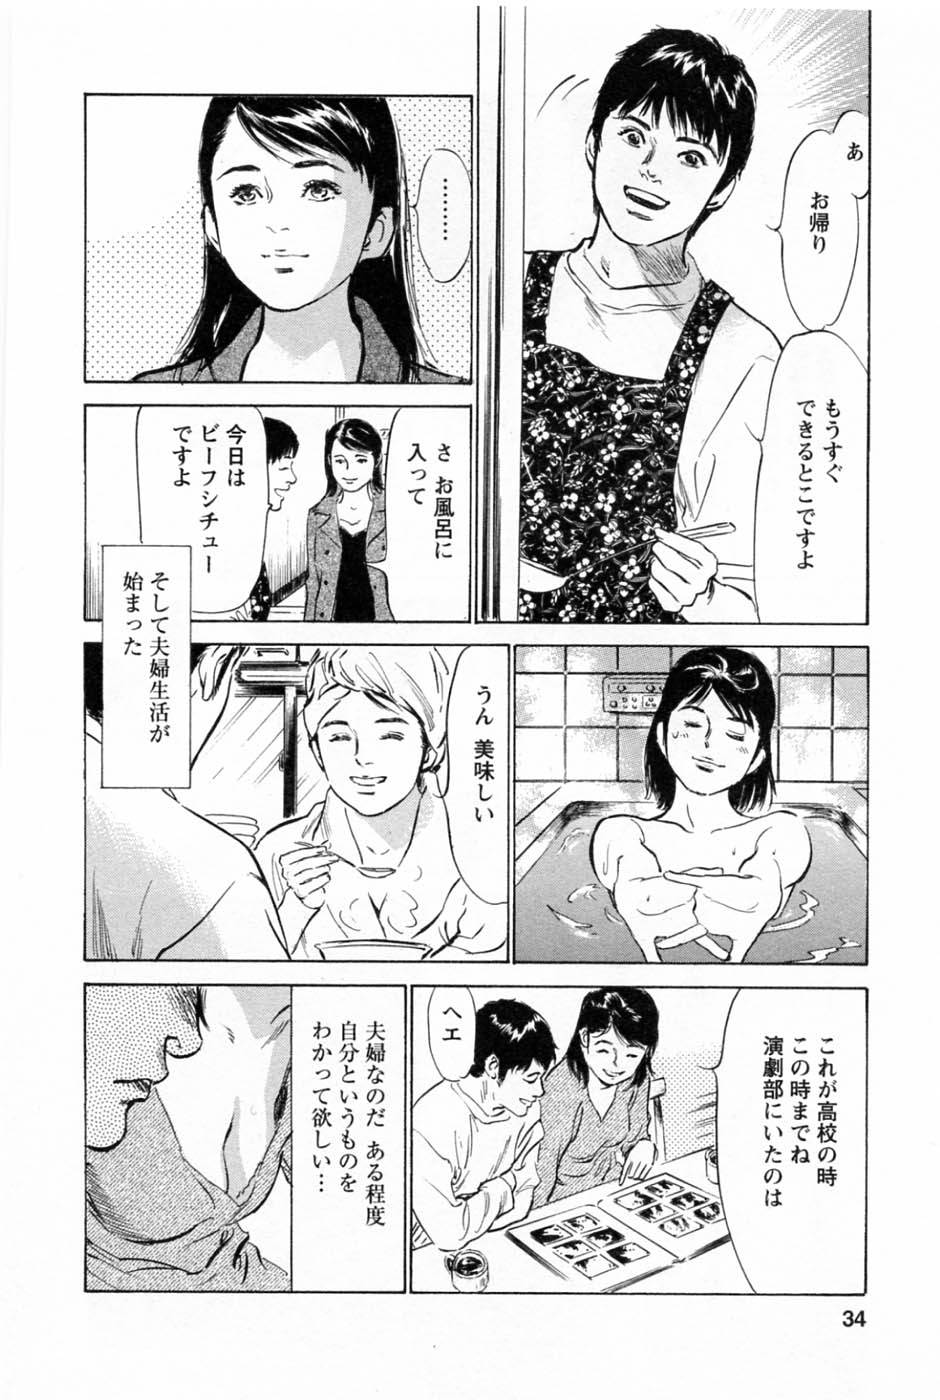 [Tomisawa Chinatsu, Hazuki Kaoru] My Pure Lady Vol.2 page 38 full